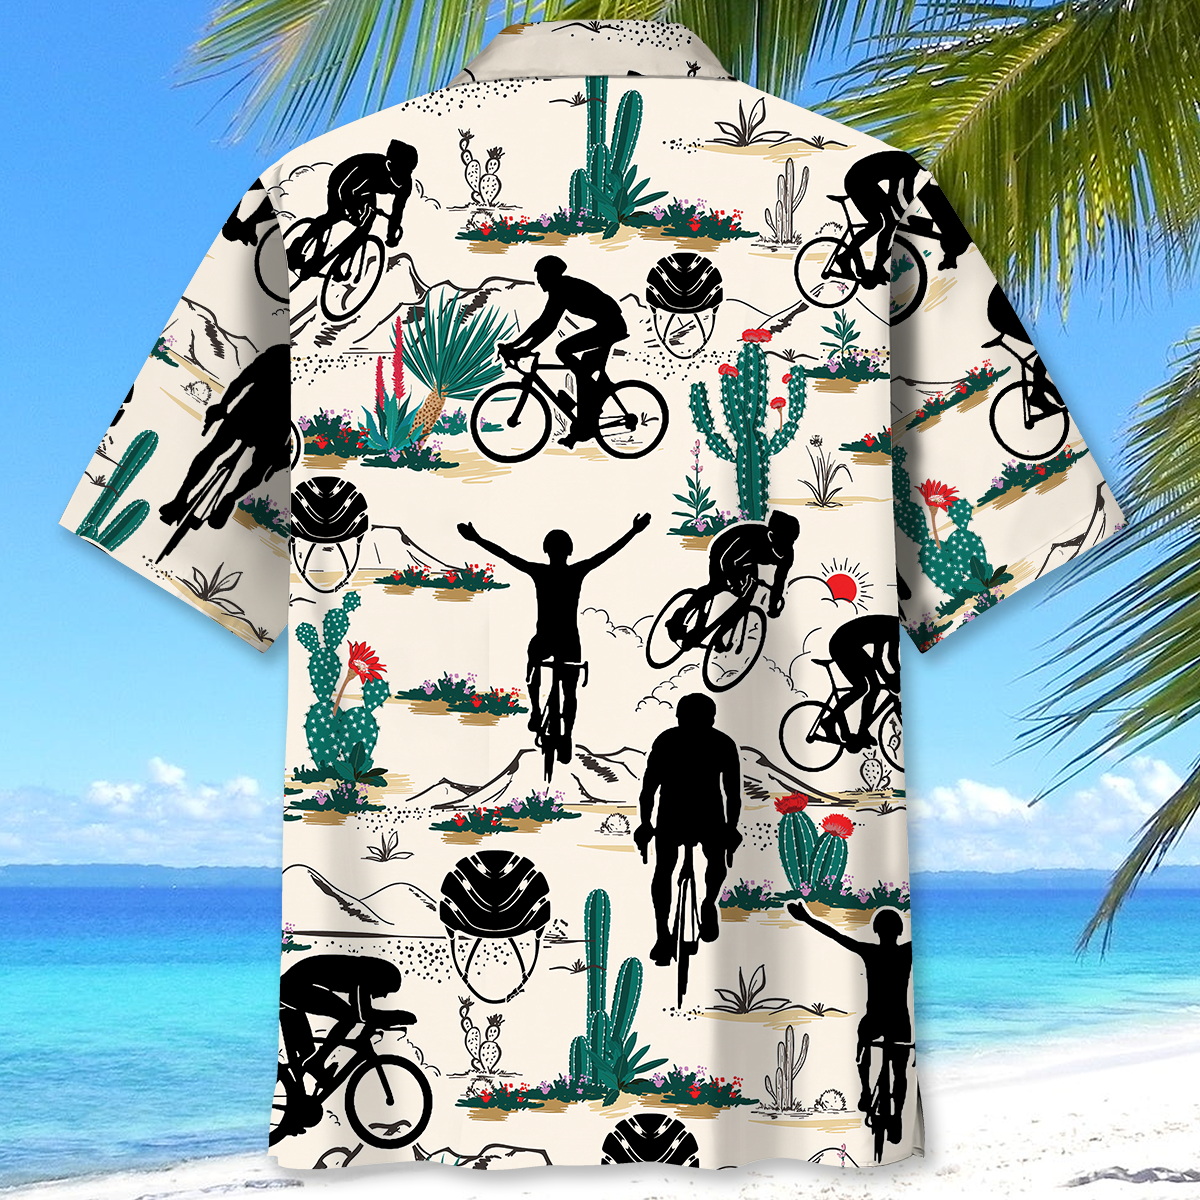 Desert Gravel Cycling Hawaiian Shirt